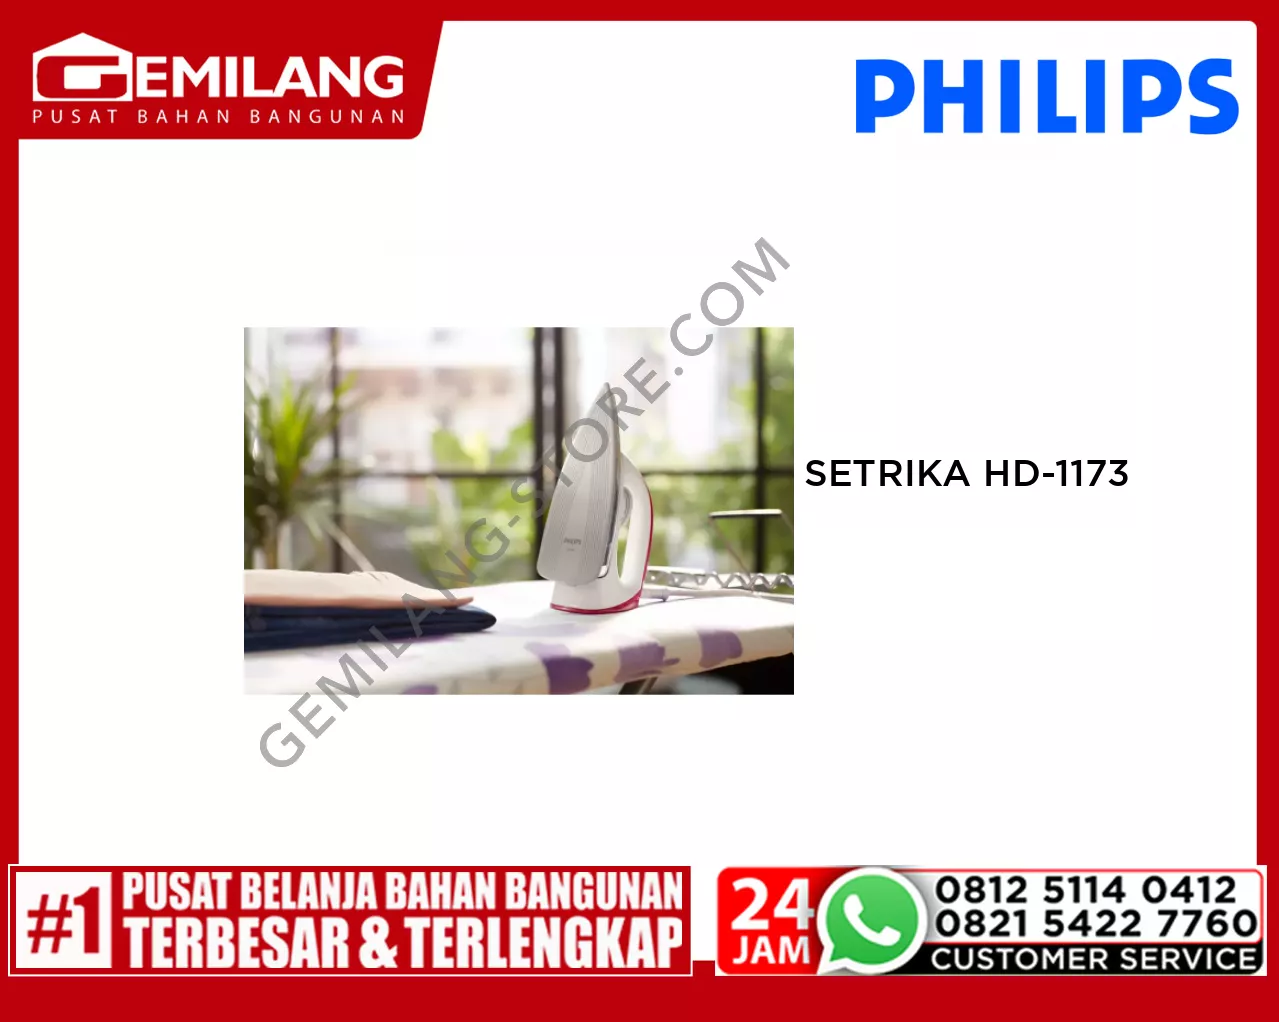 PHILIPS SETRIKA HD-1173